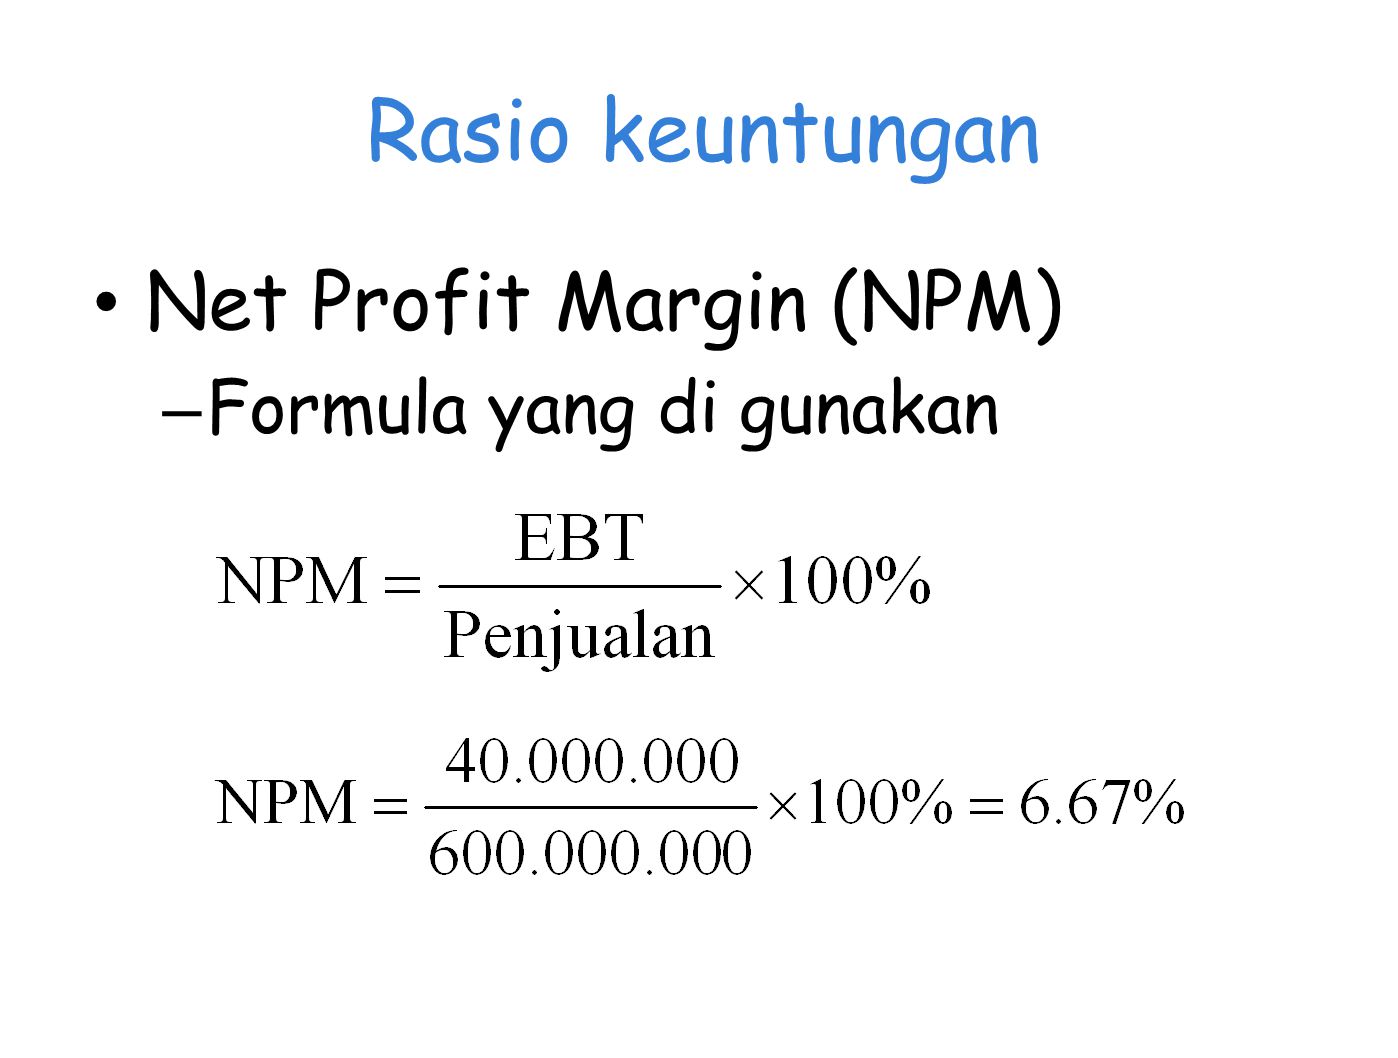 Rasio keuntungan Net Profit Margin (NPM) Formula yang di gunakan